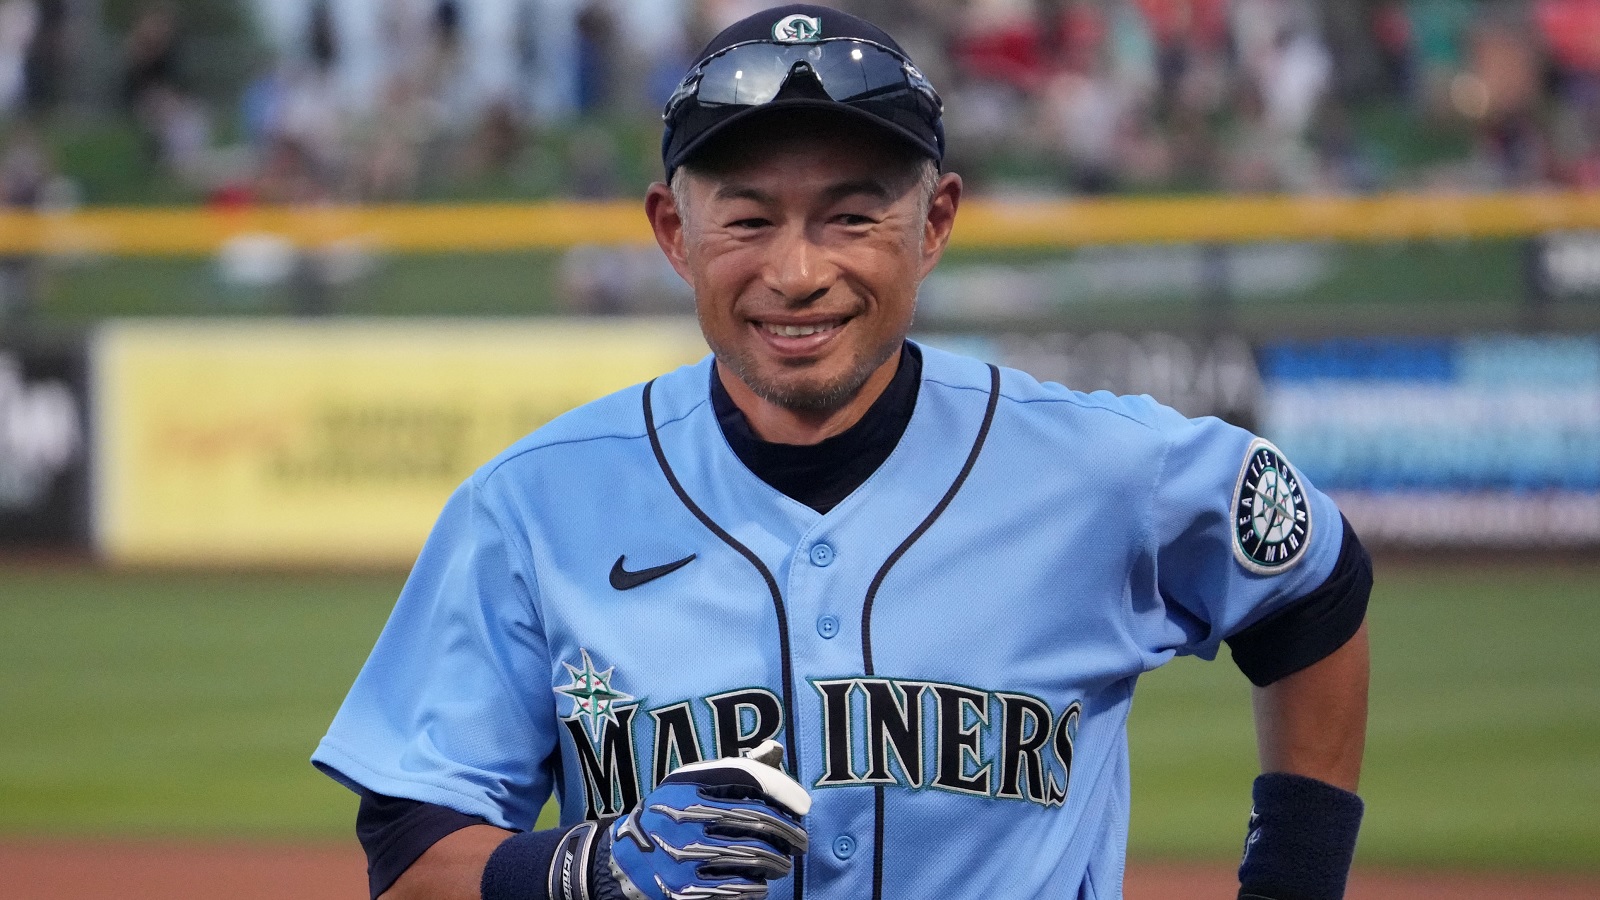 Mariners send veteran OF Ichiro Suzuki to Yankees